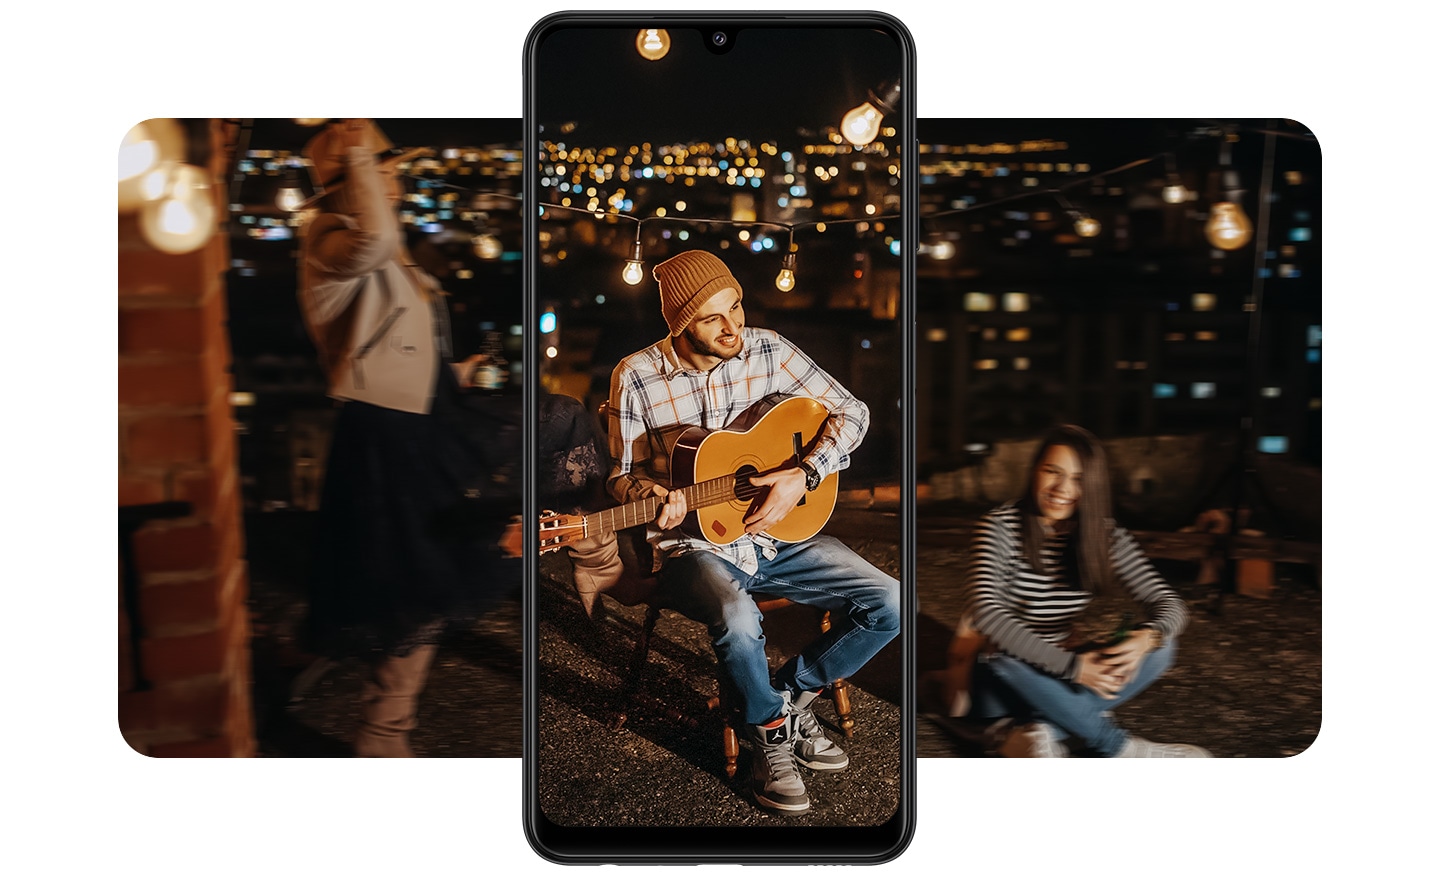 Mọi người thưởng thức bữa tiệc vào ban đêm với cảnh nền thành phố lấp lánh. Ở giữa là điện thoại Galaxy A22 quay dọc ghi hình một người đàn ông đang chơi guitar